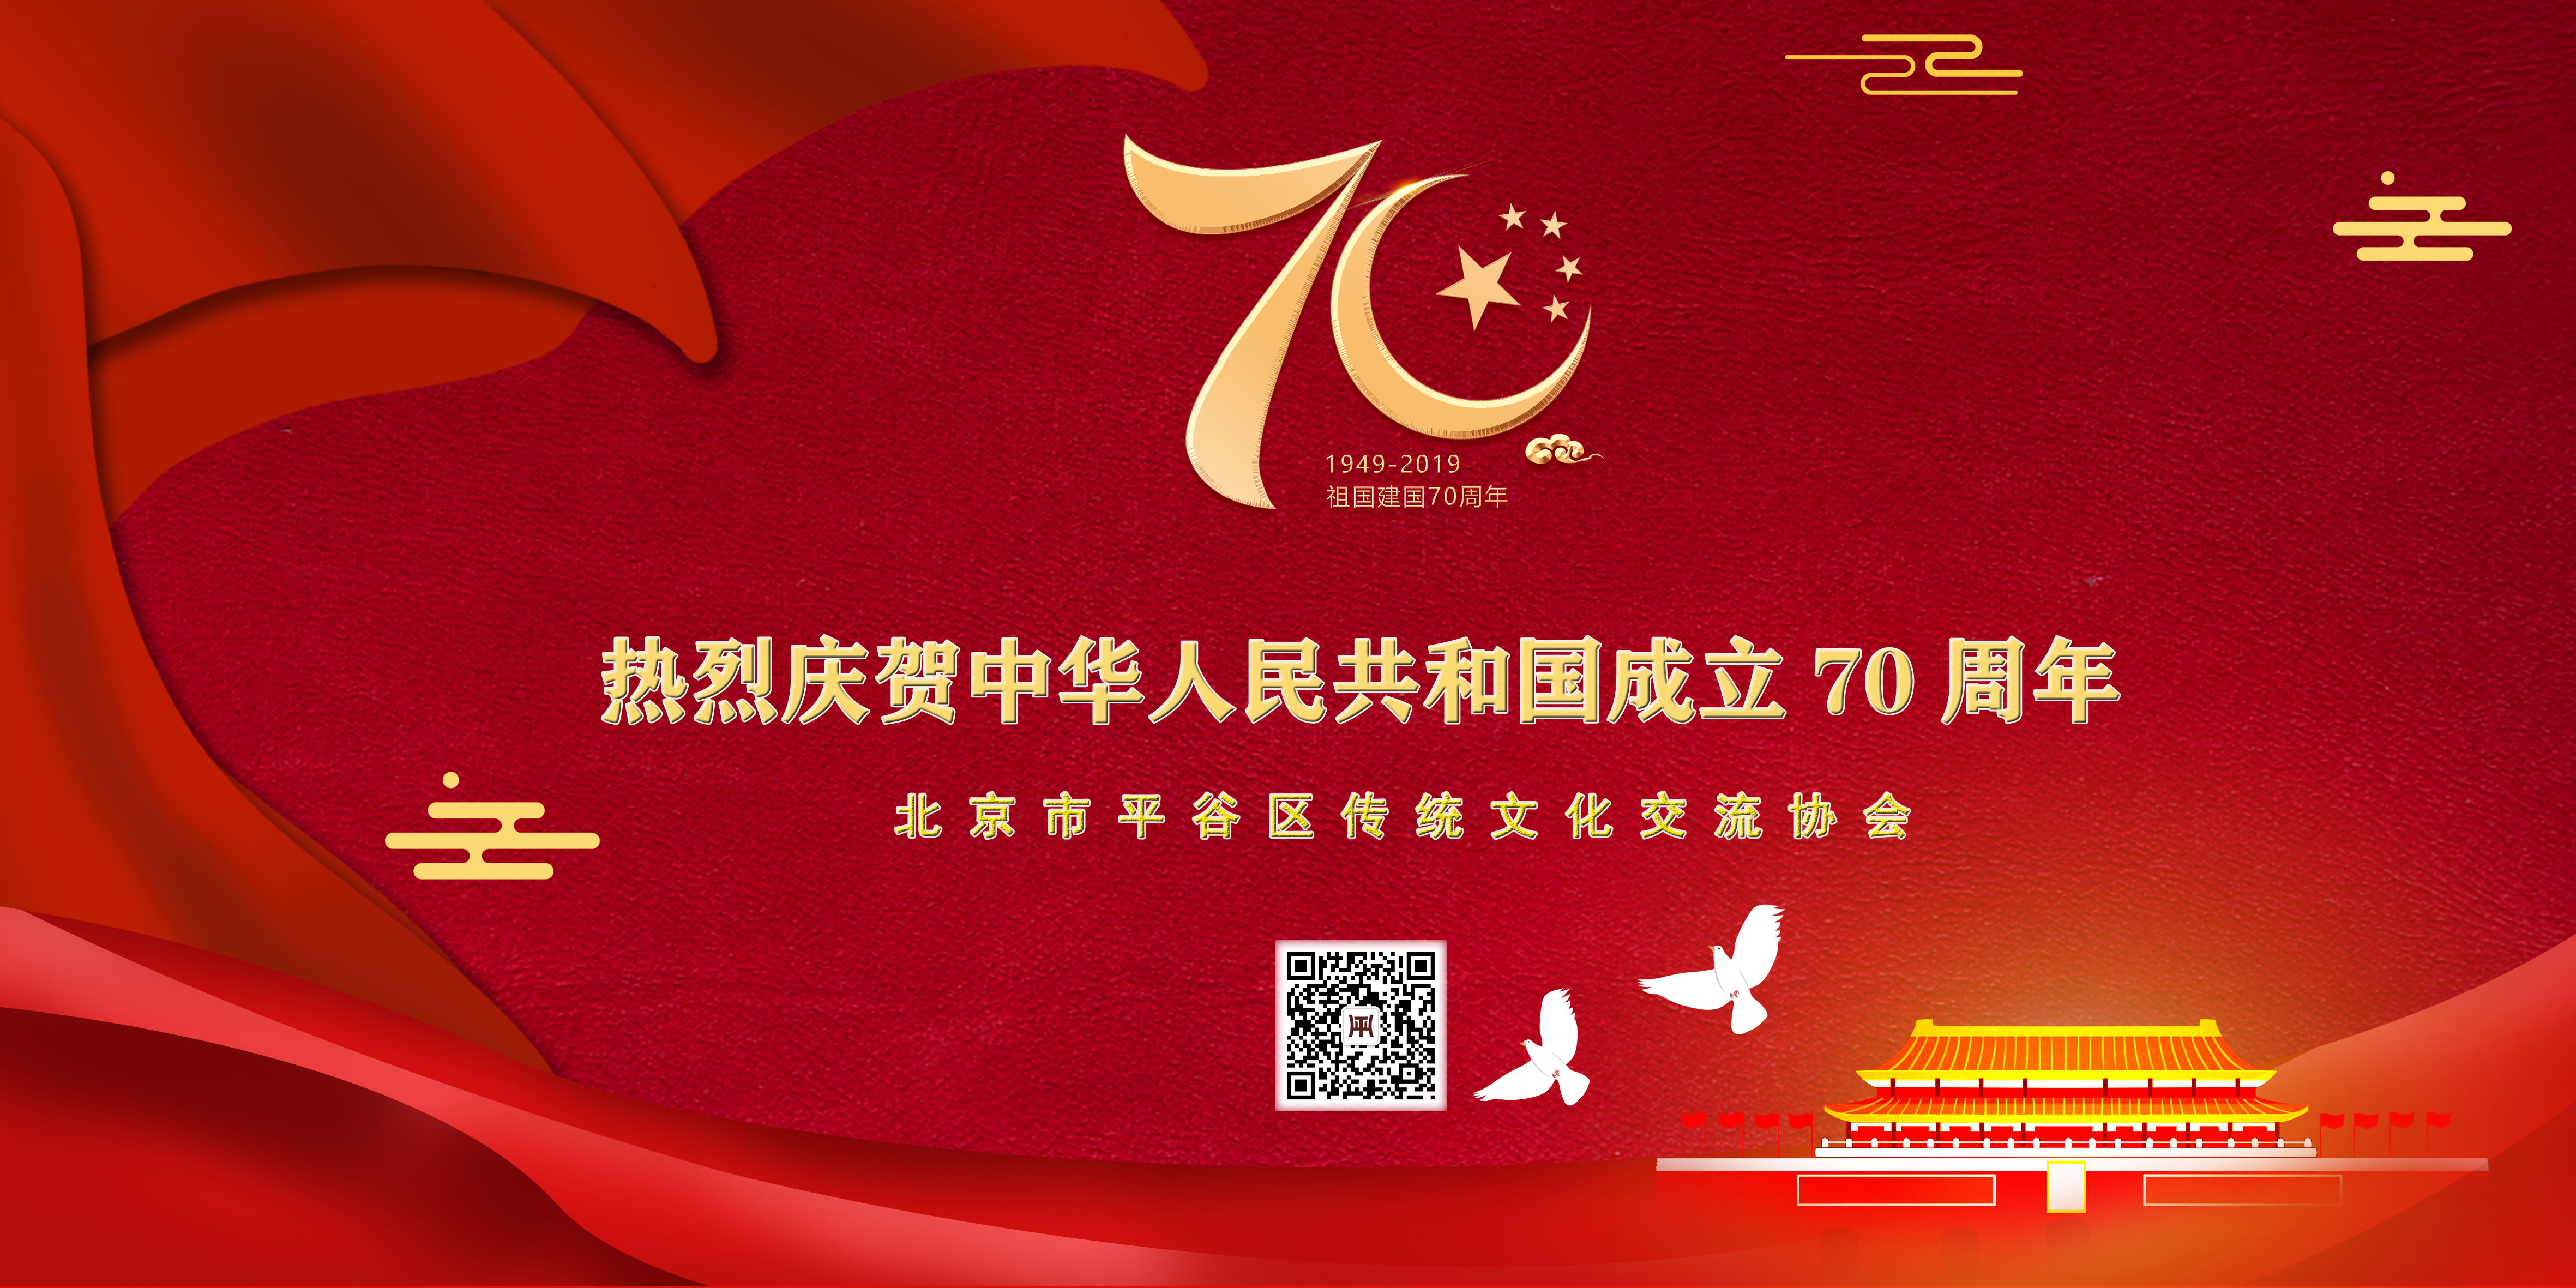 热烈庆贺中华人民共和国成立70周年